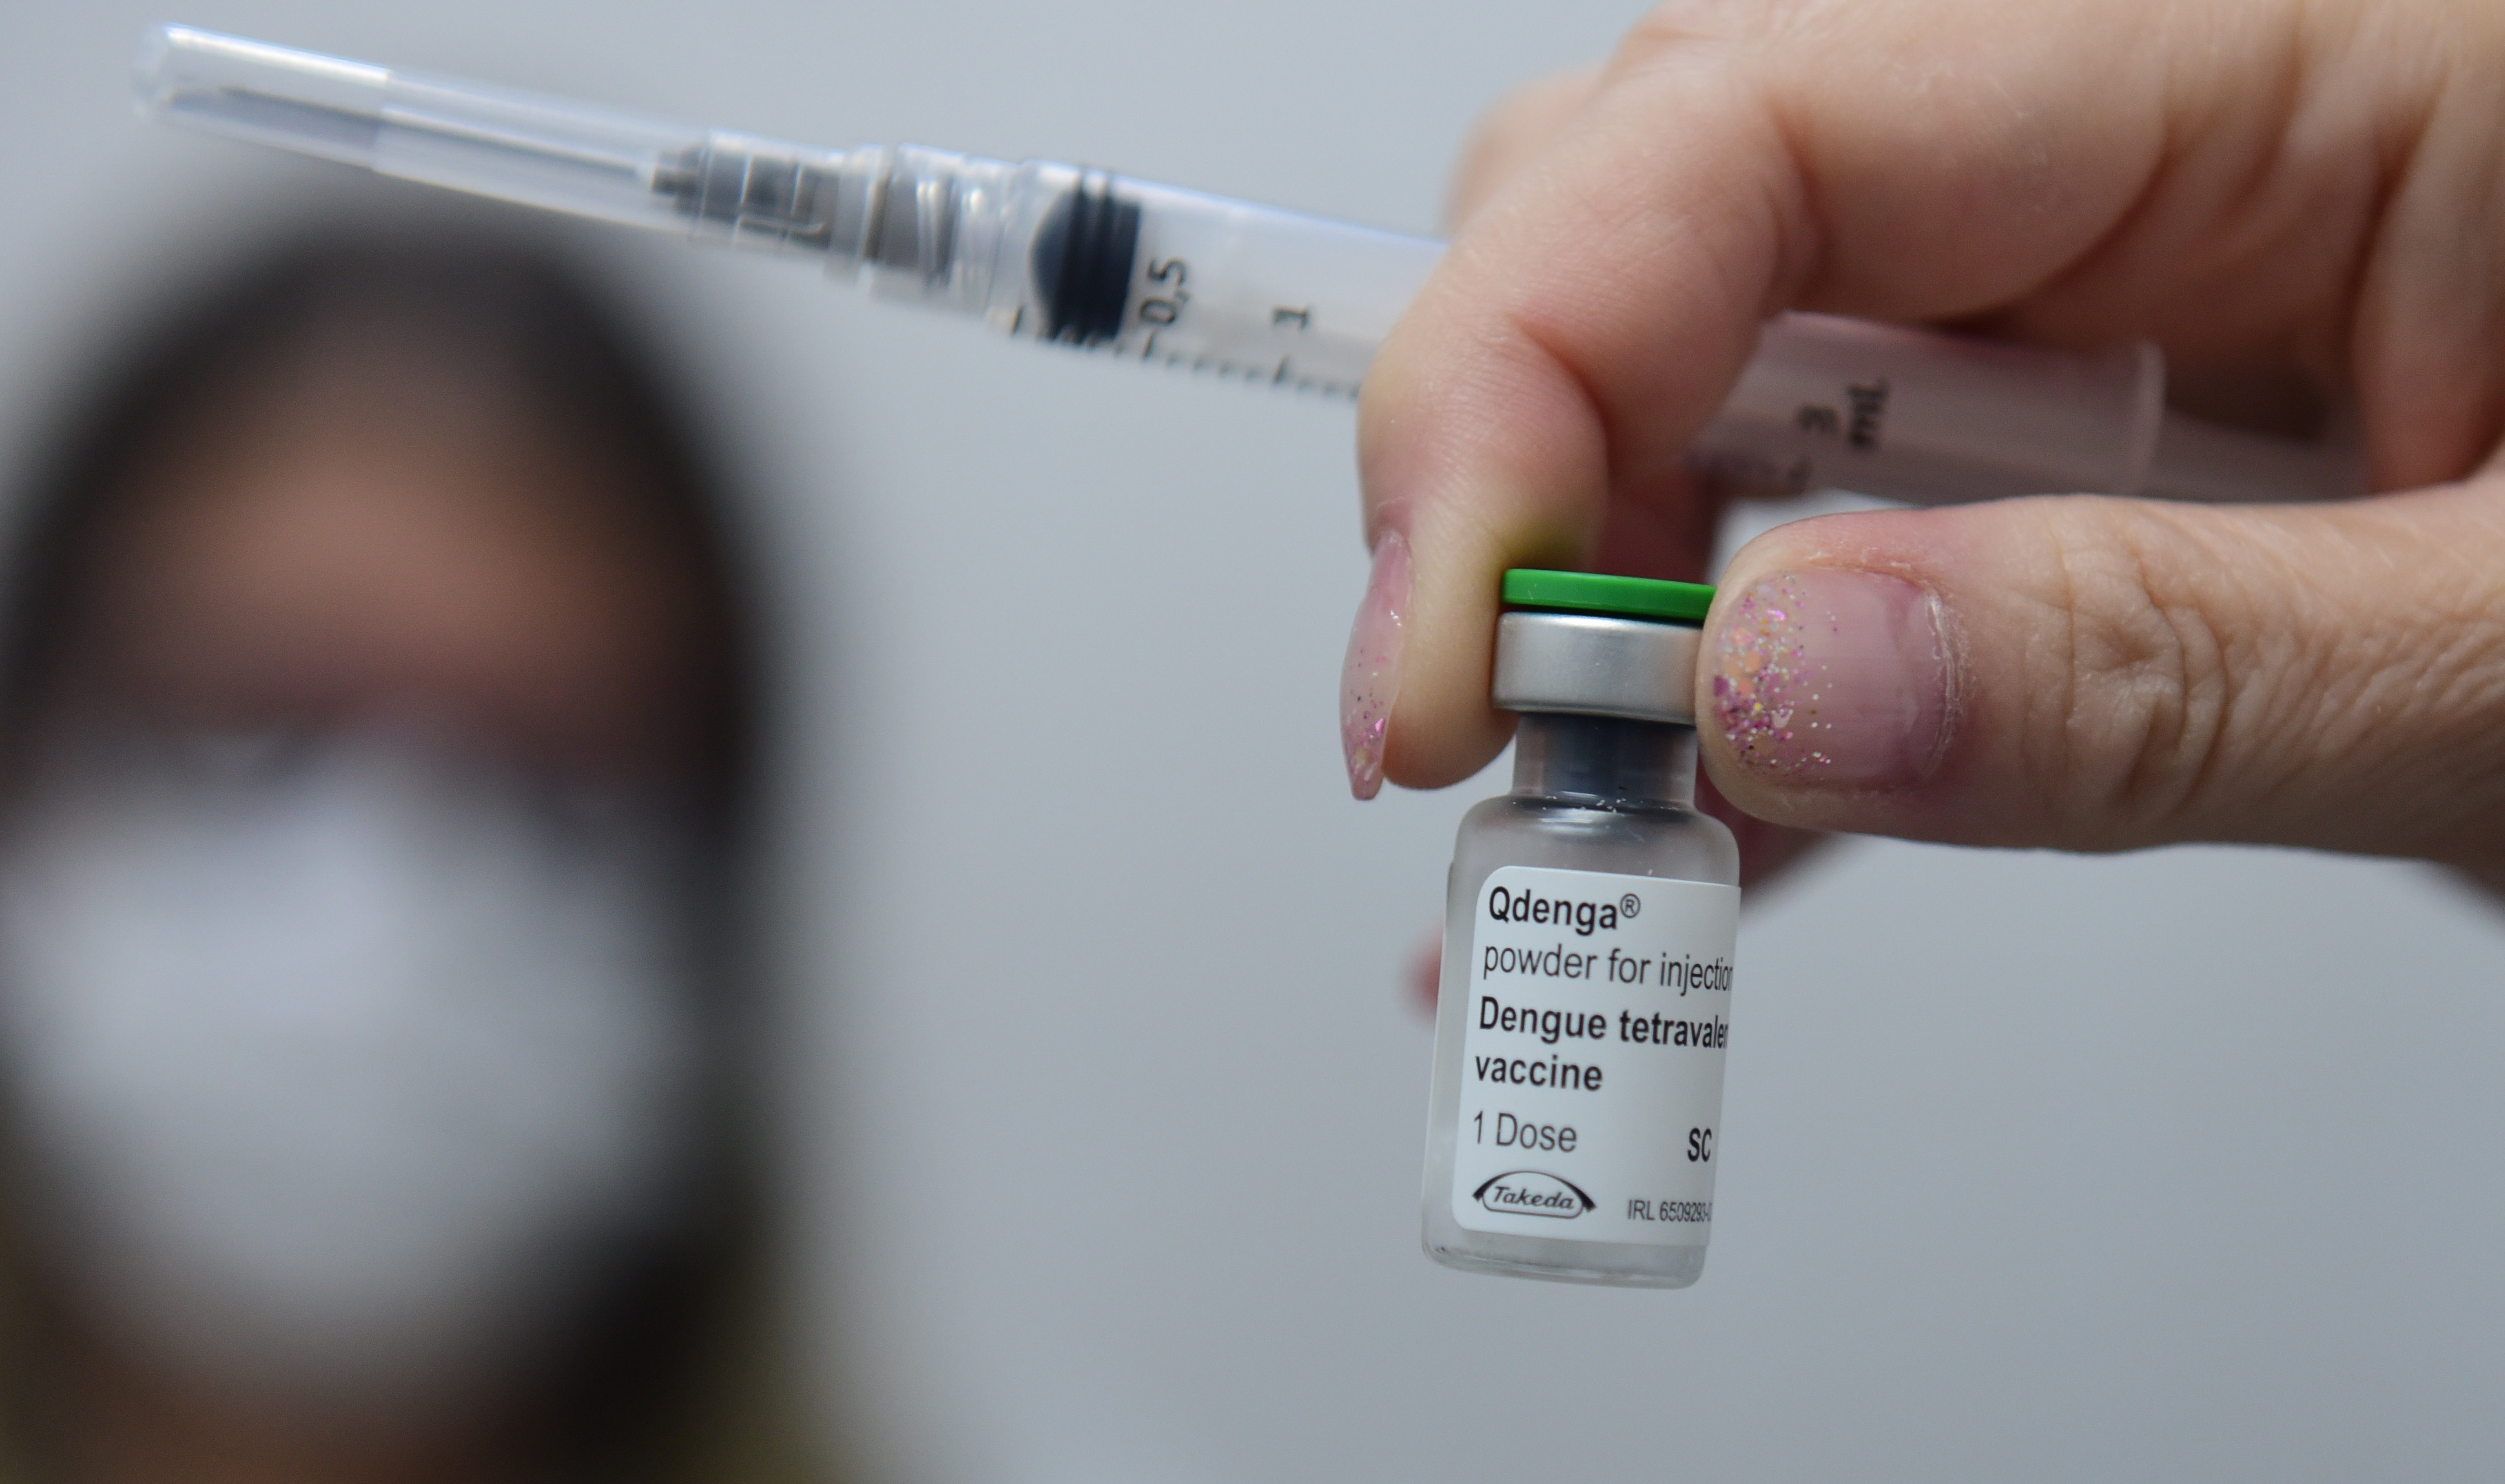 Recorte da faixa etária de 10 a 14 anos foi eleito como o melhor cenário para iniciar a vacinação contra a dengue no Brasil